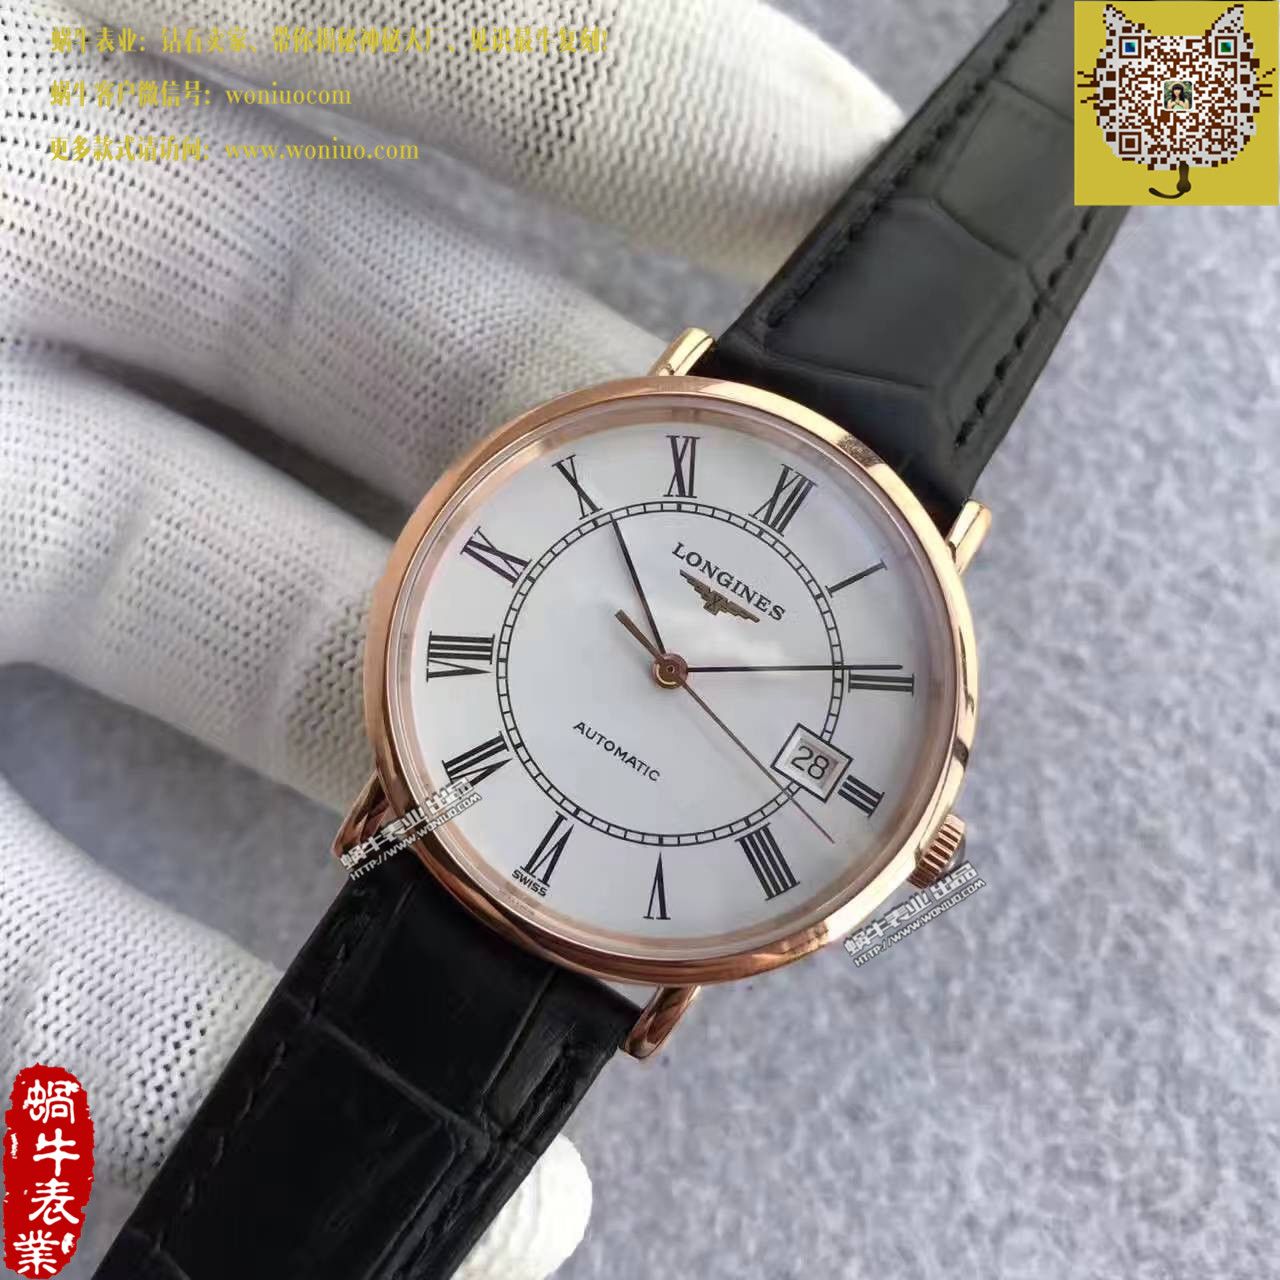 【台湾厂一比一超A高仿手表】浪琴《博雅》优雅系列L4.787.8.11.4腕表 